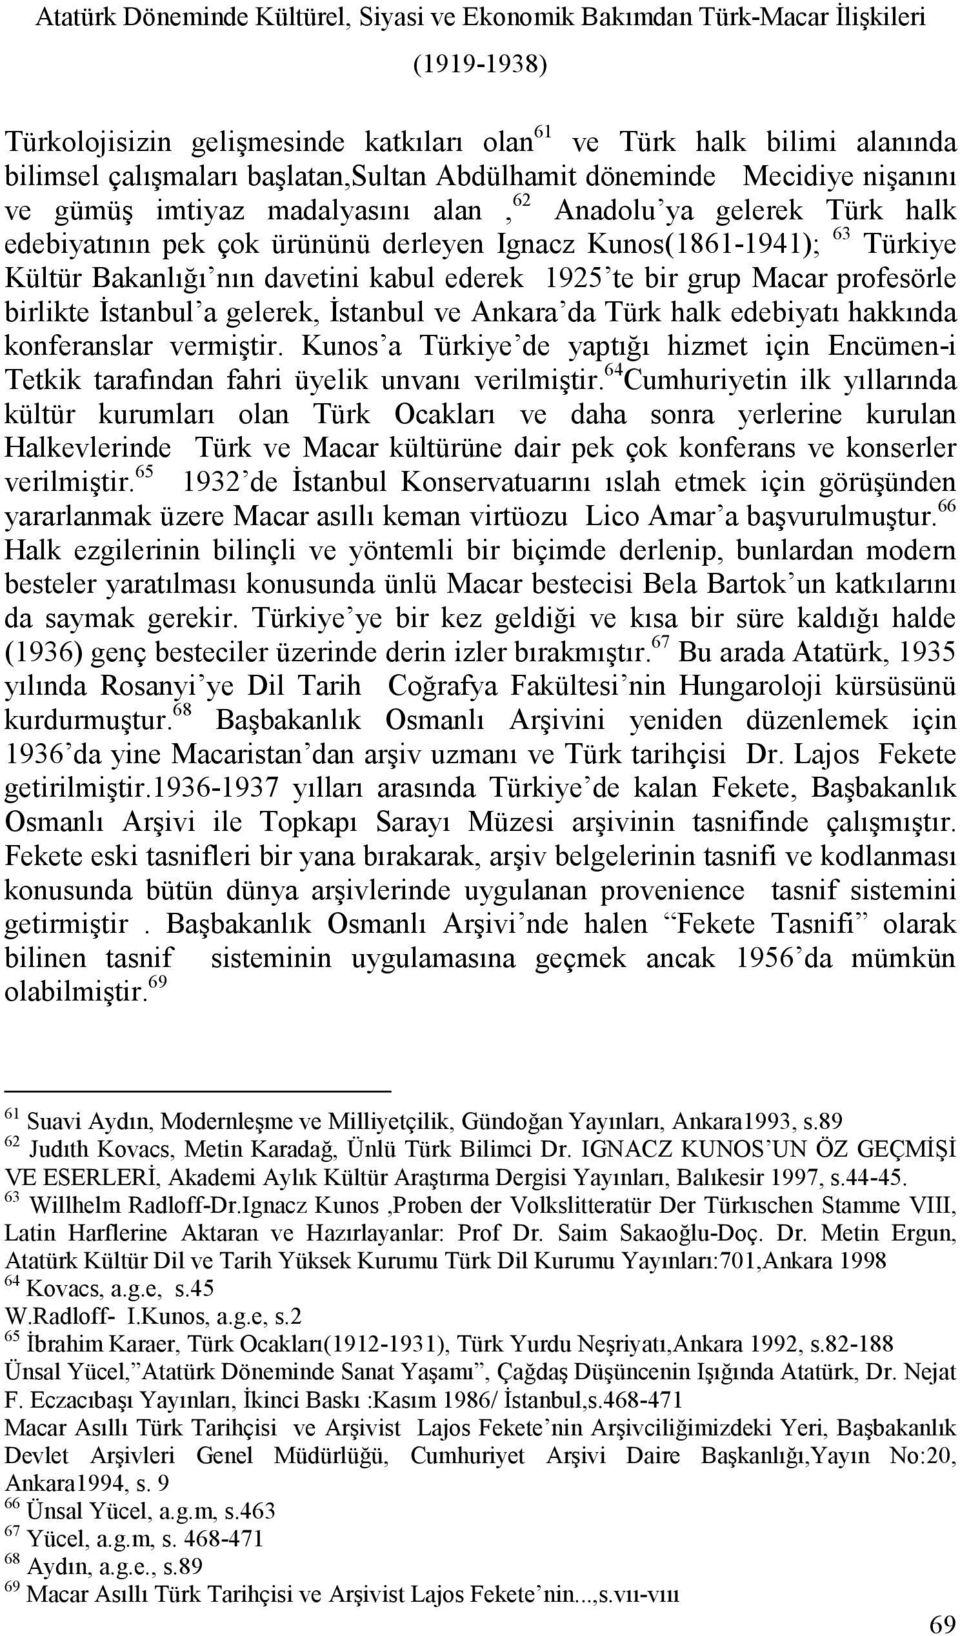 Kültür Bakanlığı nın davetini kabul ederek 1925 te bir grup Macar profesörle birlikte Đstanbul a gelerek, Đstanbul ve Ankara da Türk halk edebiyatı hakkında konferanslar vermiştir.